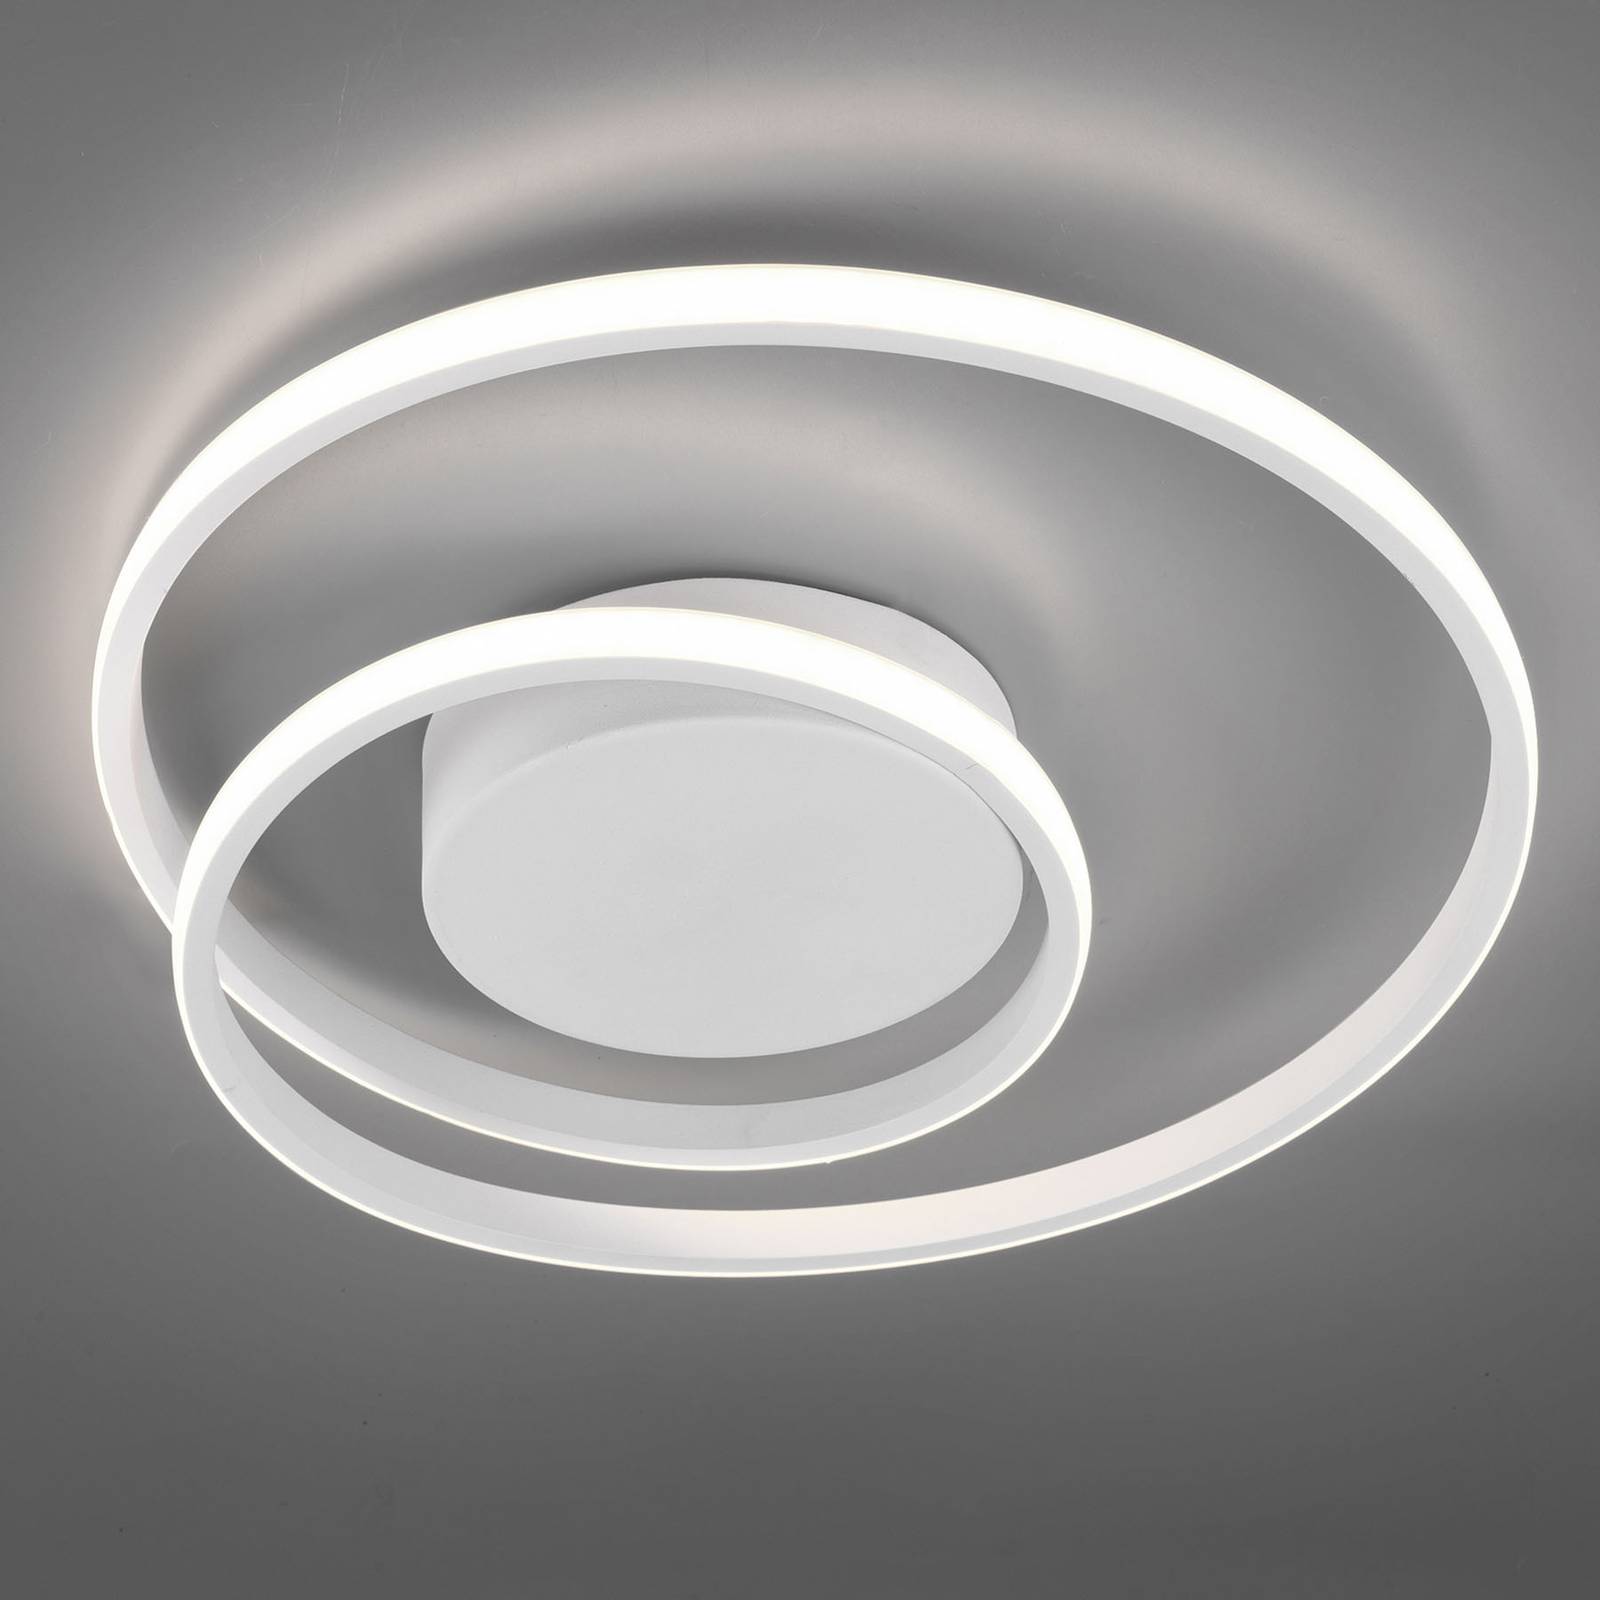 Zibal LED ceiling light, dimmable, white